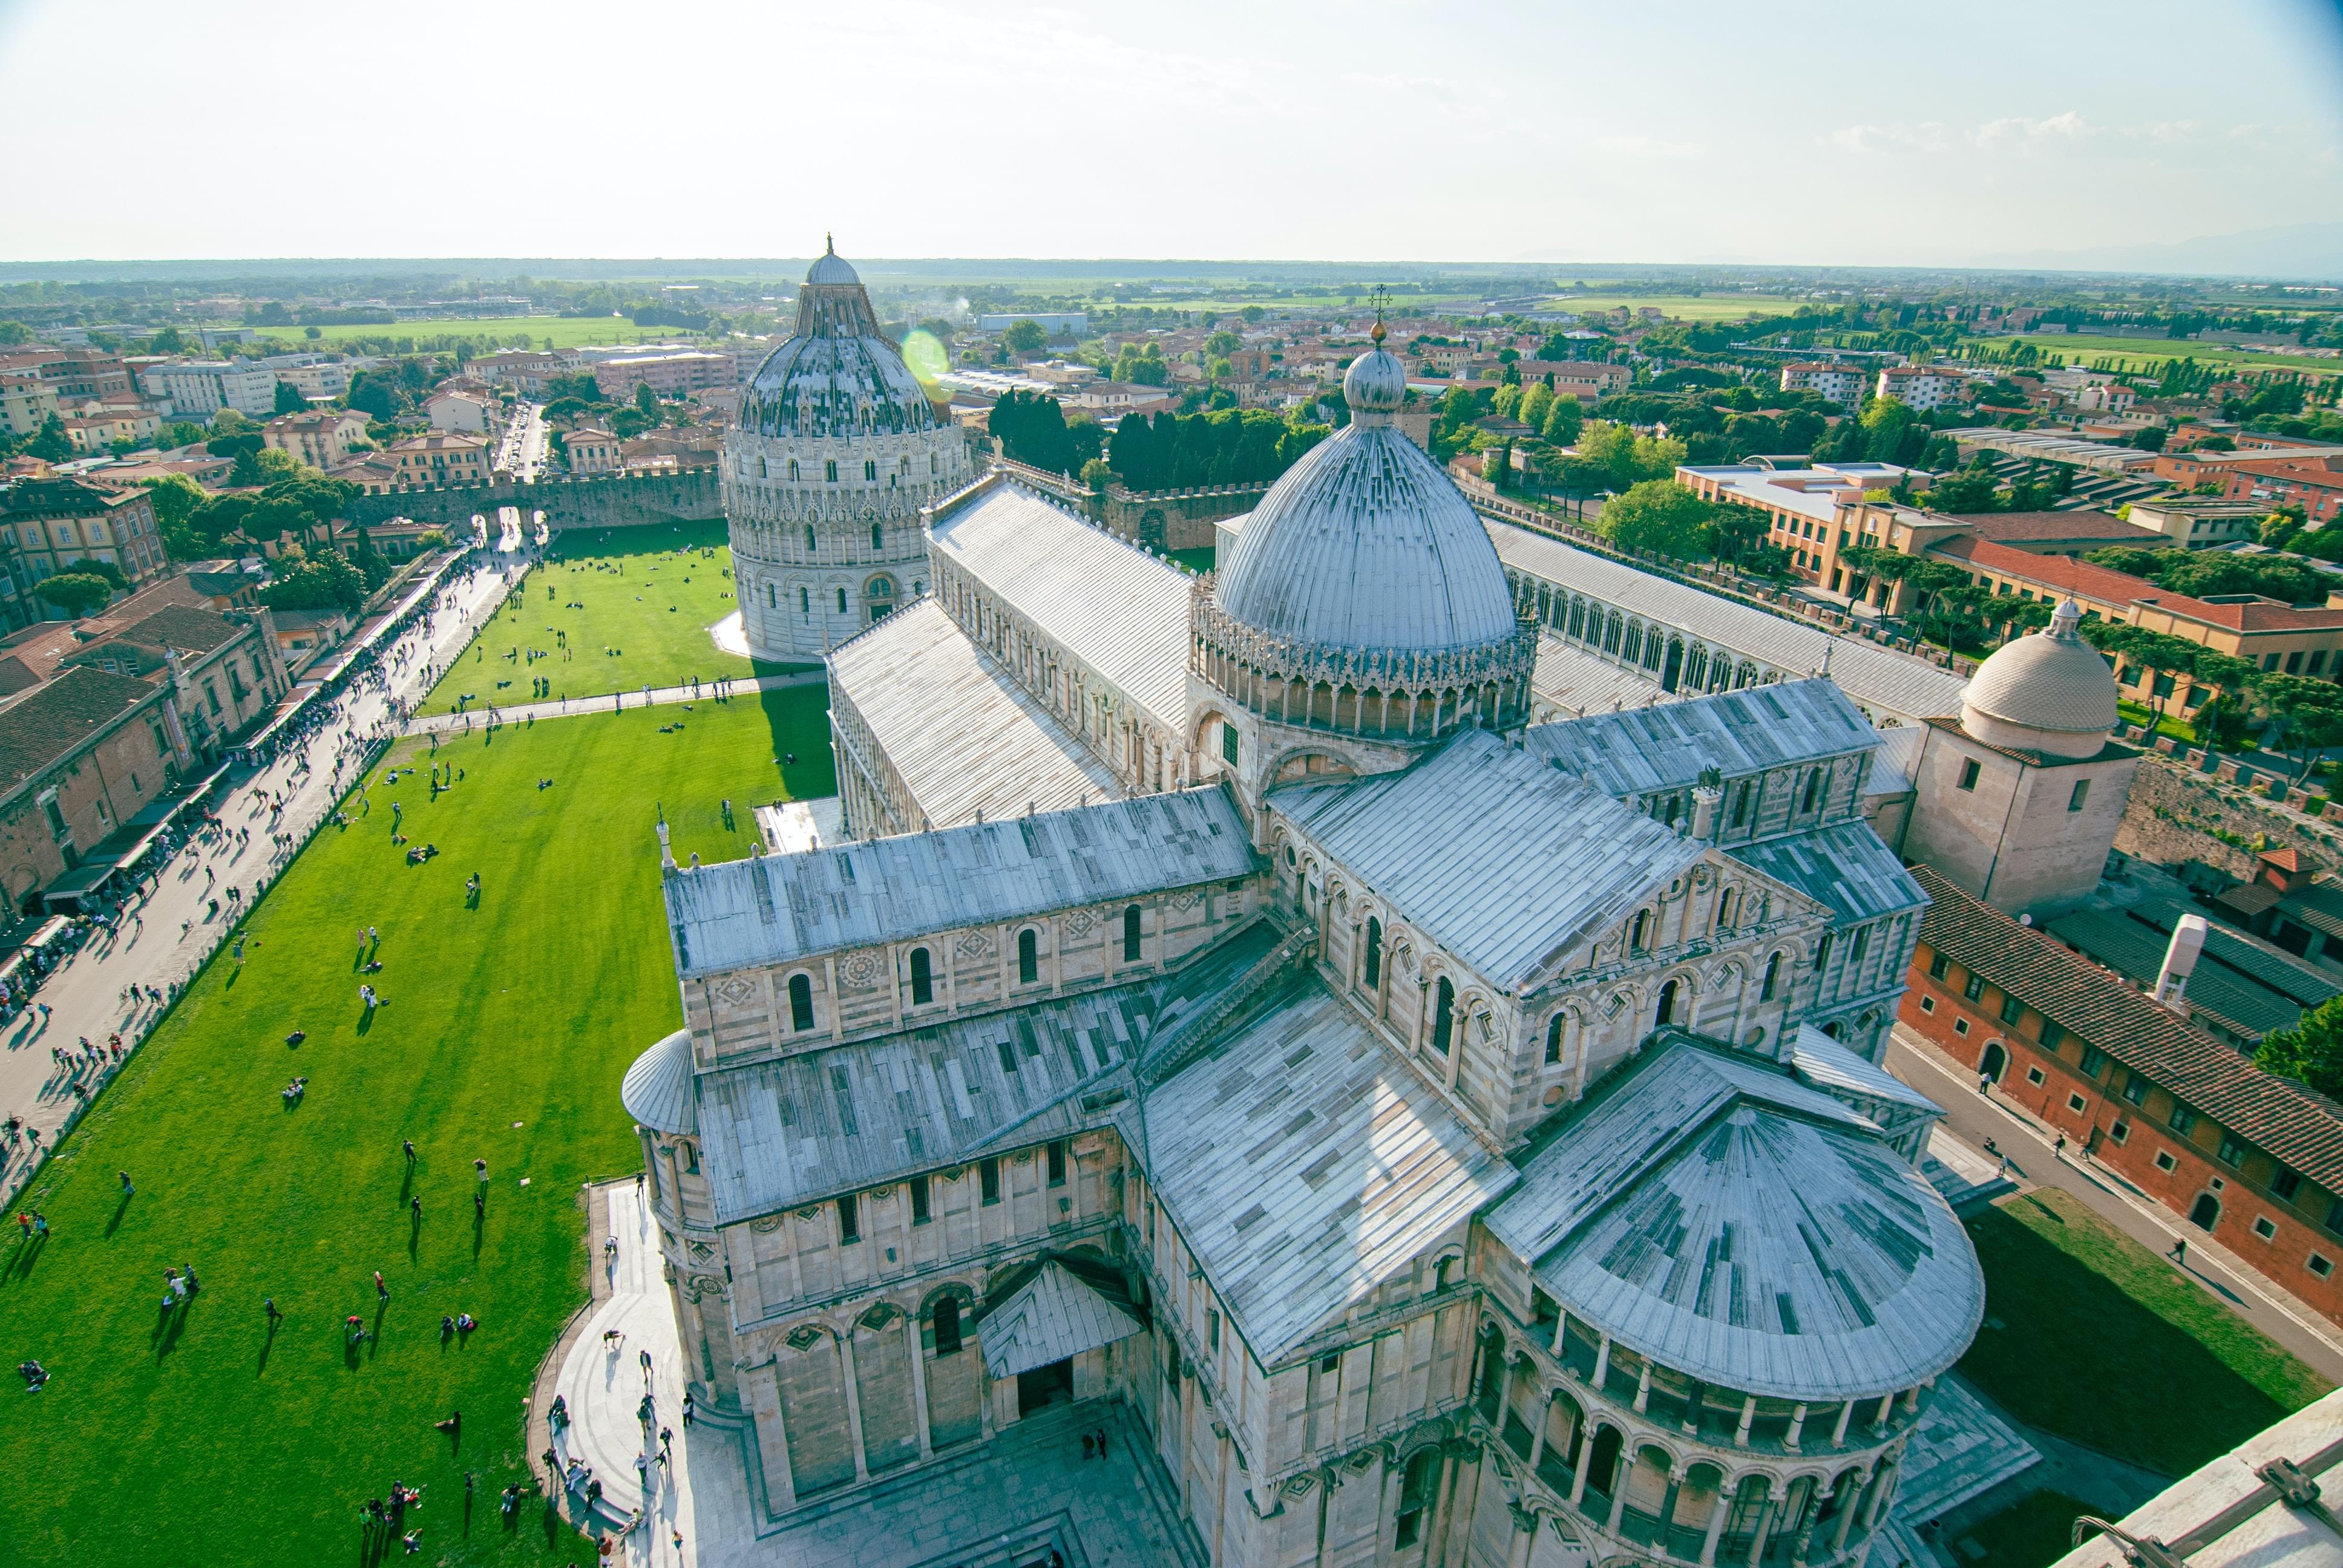 Leaning Tower Of Pisa Walking Tour